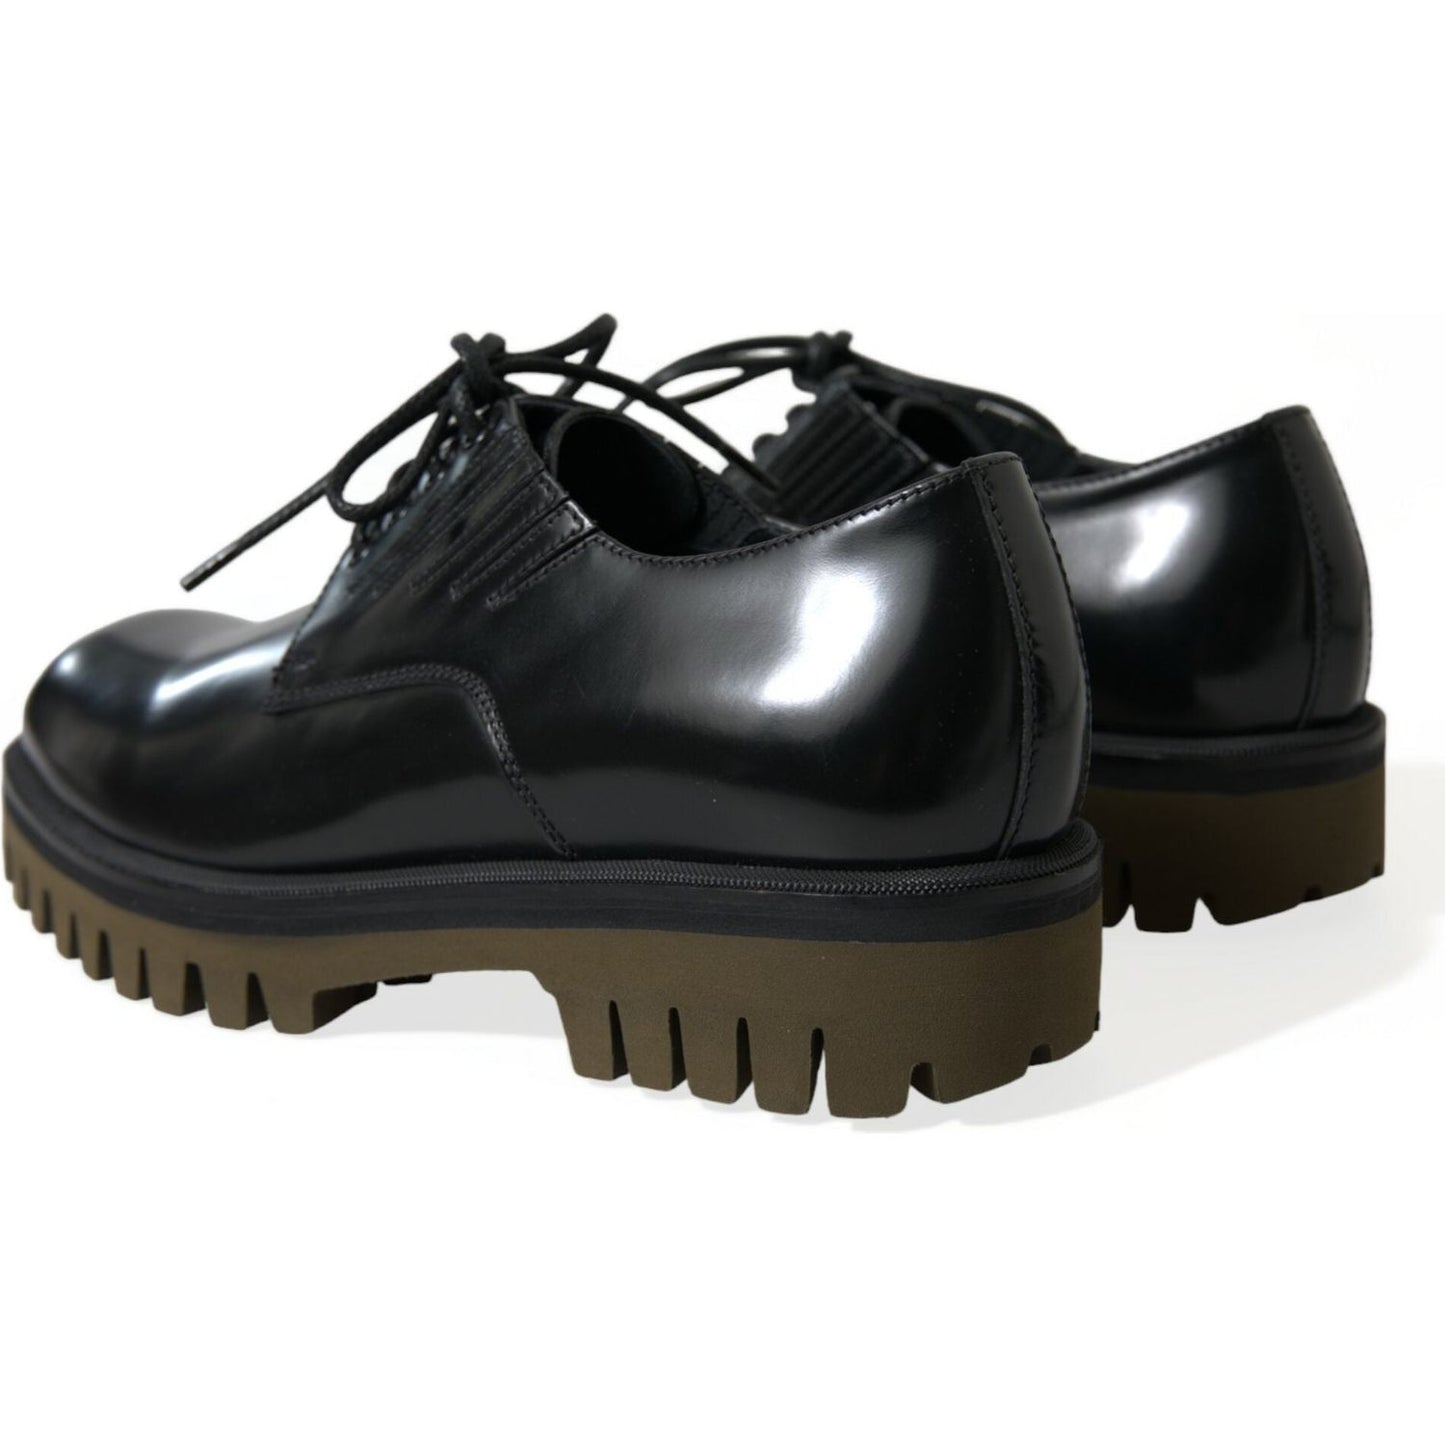 Dolce & Gabbana | Elegant Black Leather Derby Dress Shoes| McRichard Designer Brands   